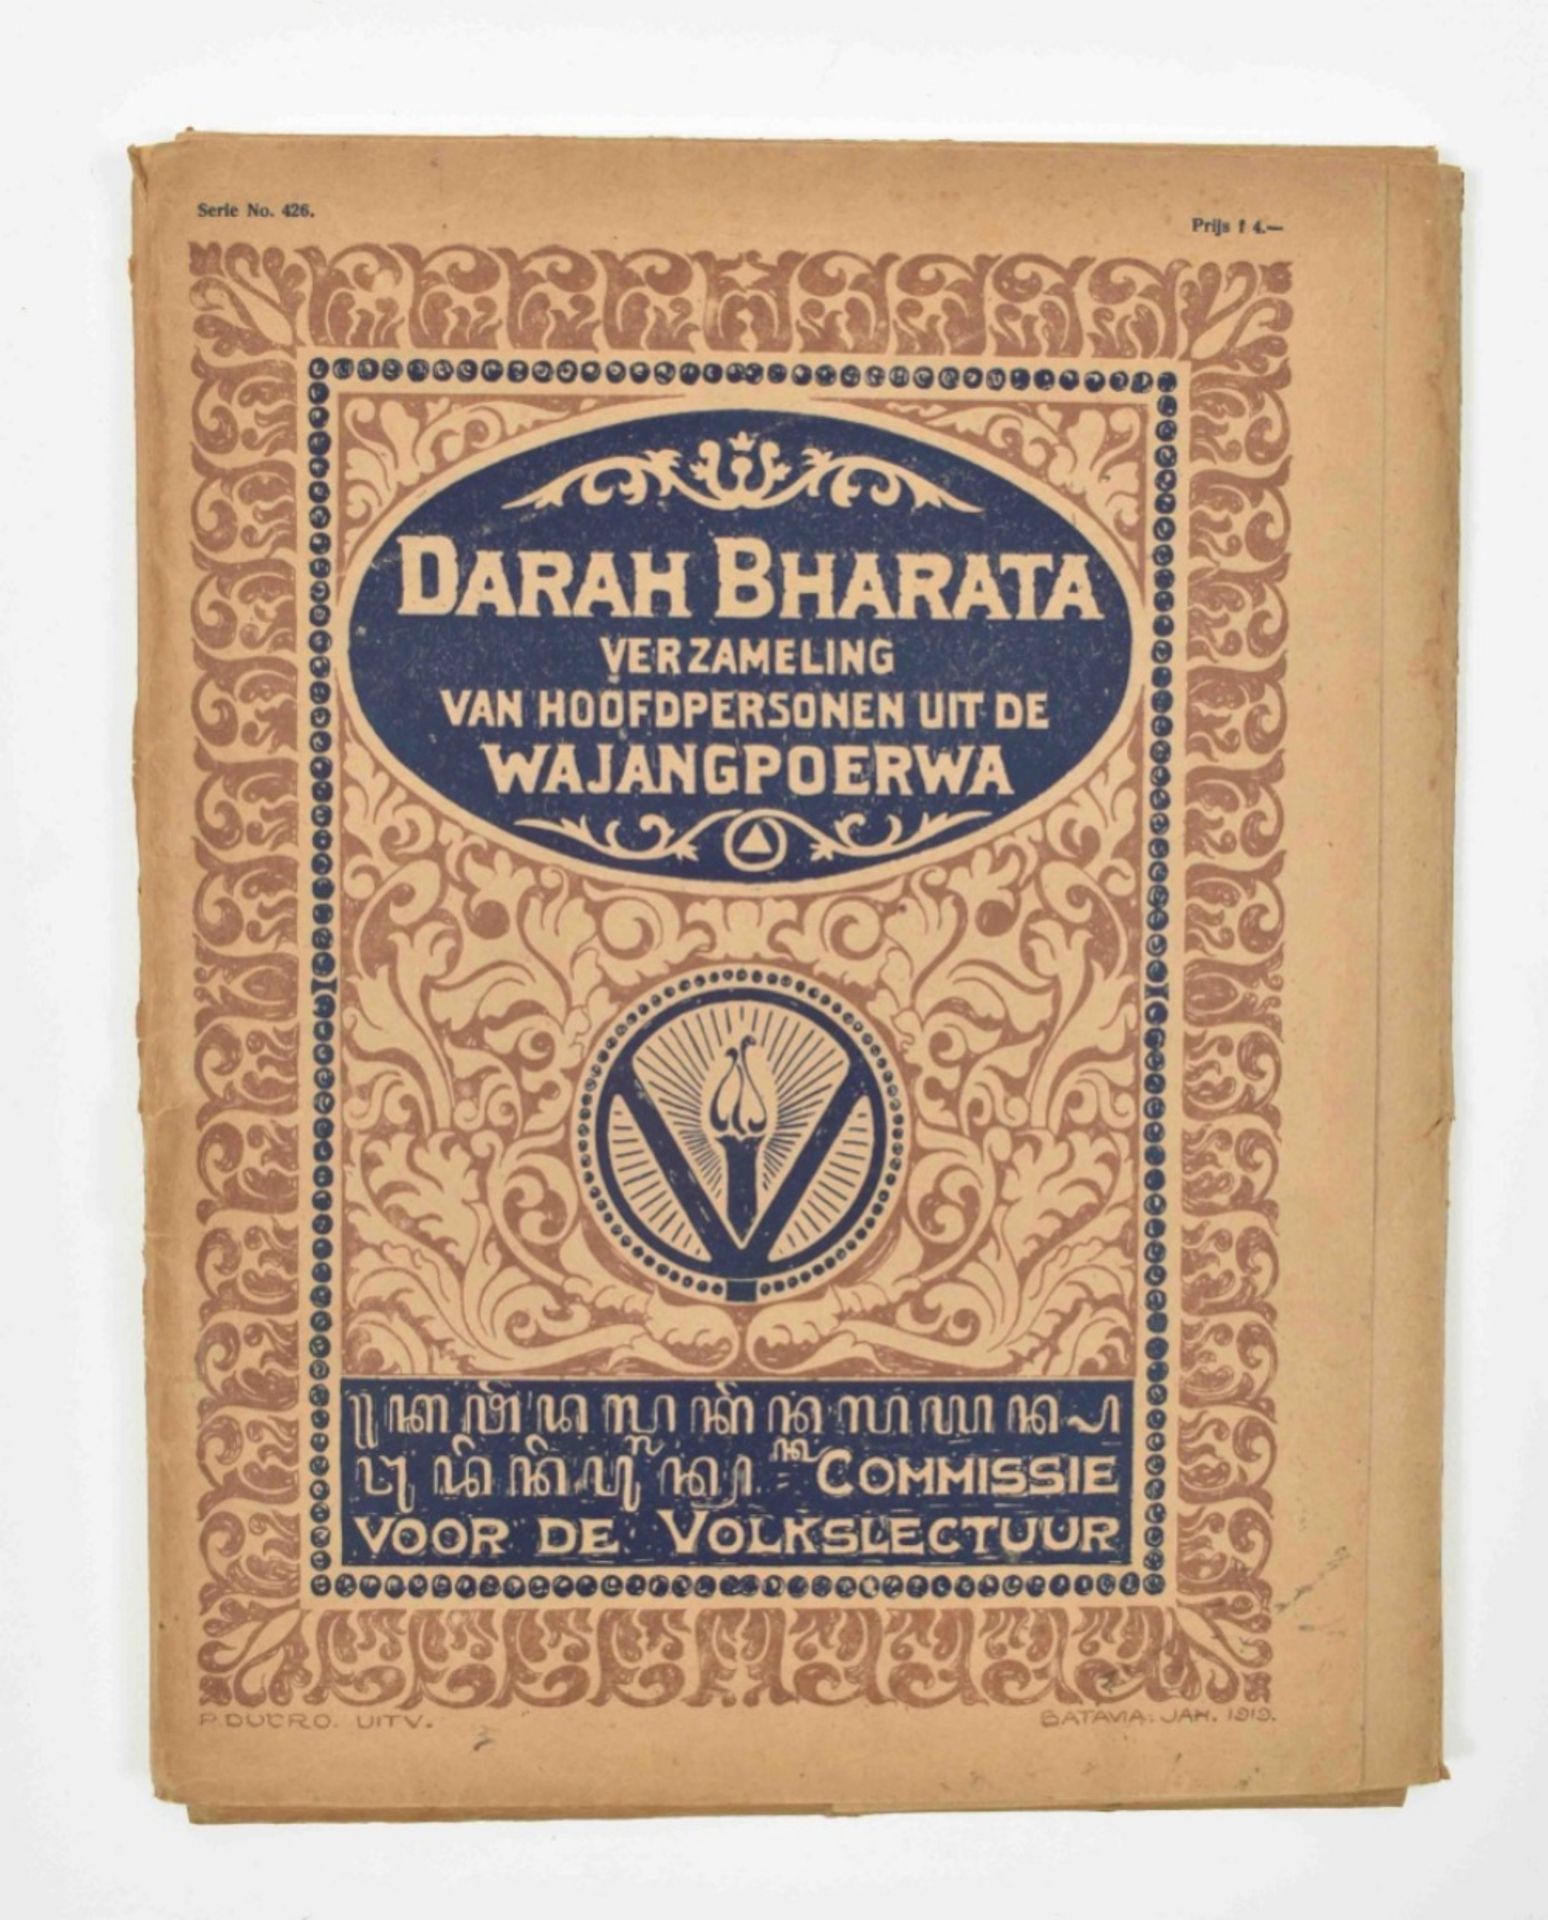 Darah Bharata. Verzameling van hoofdpersonen uit de Wajang Poerwa